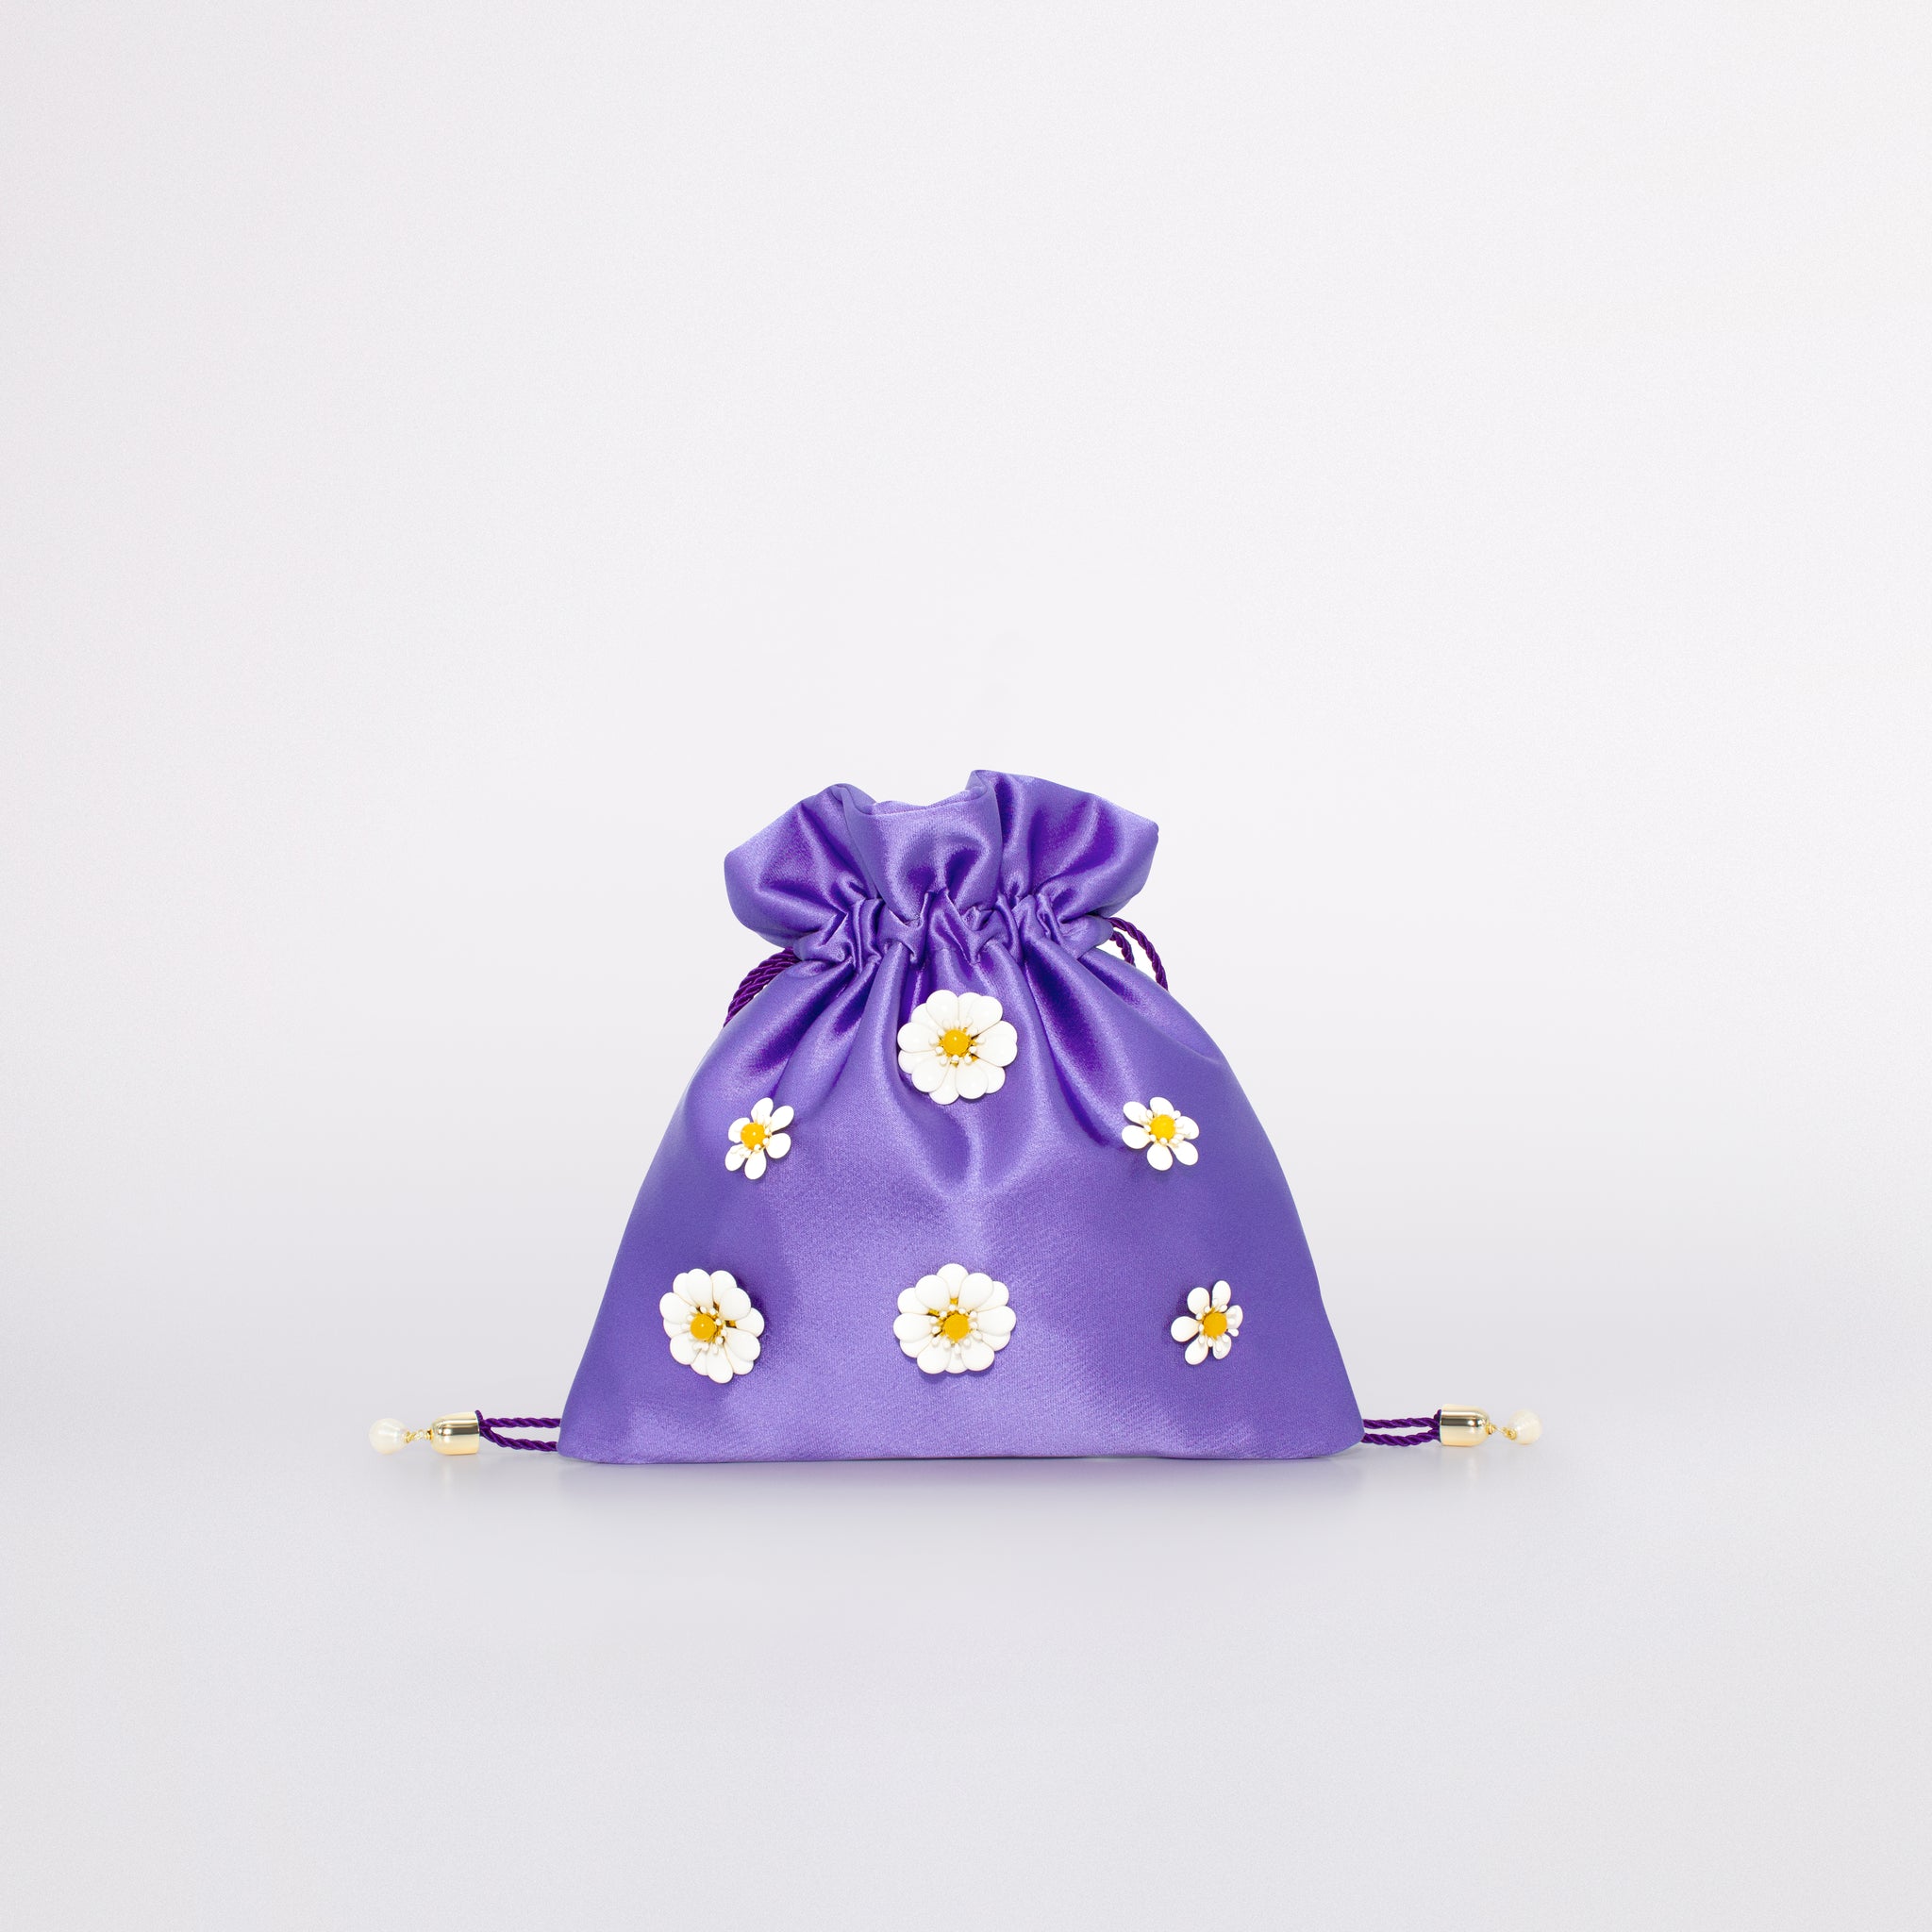 Daisy mini bag carolina in colorazione viola